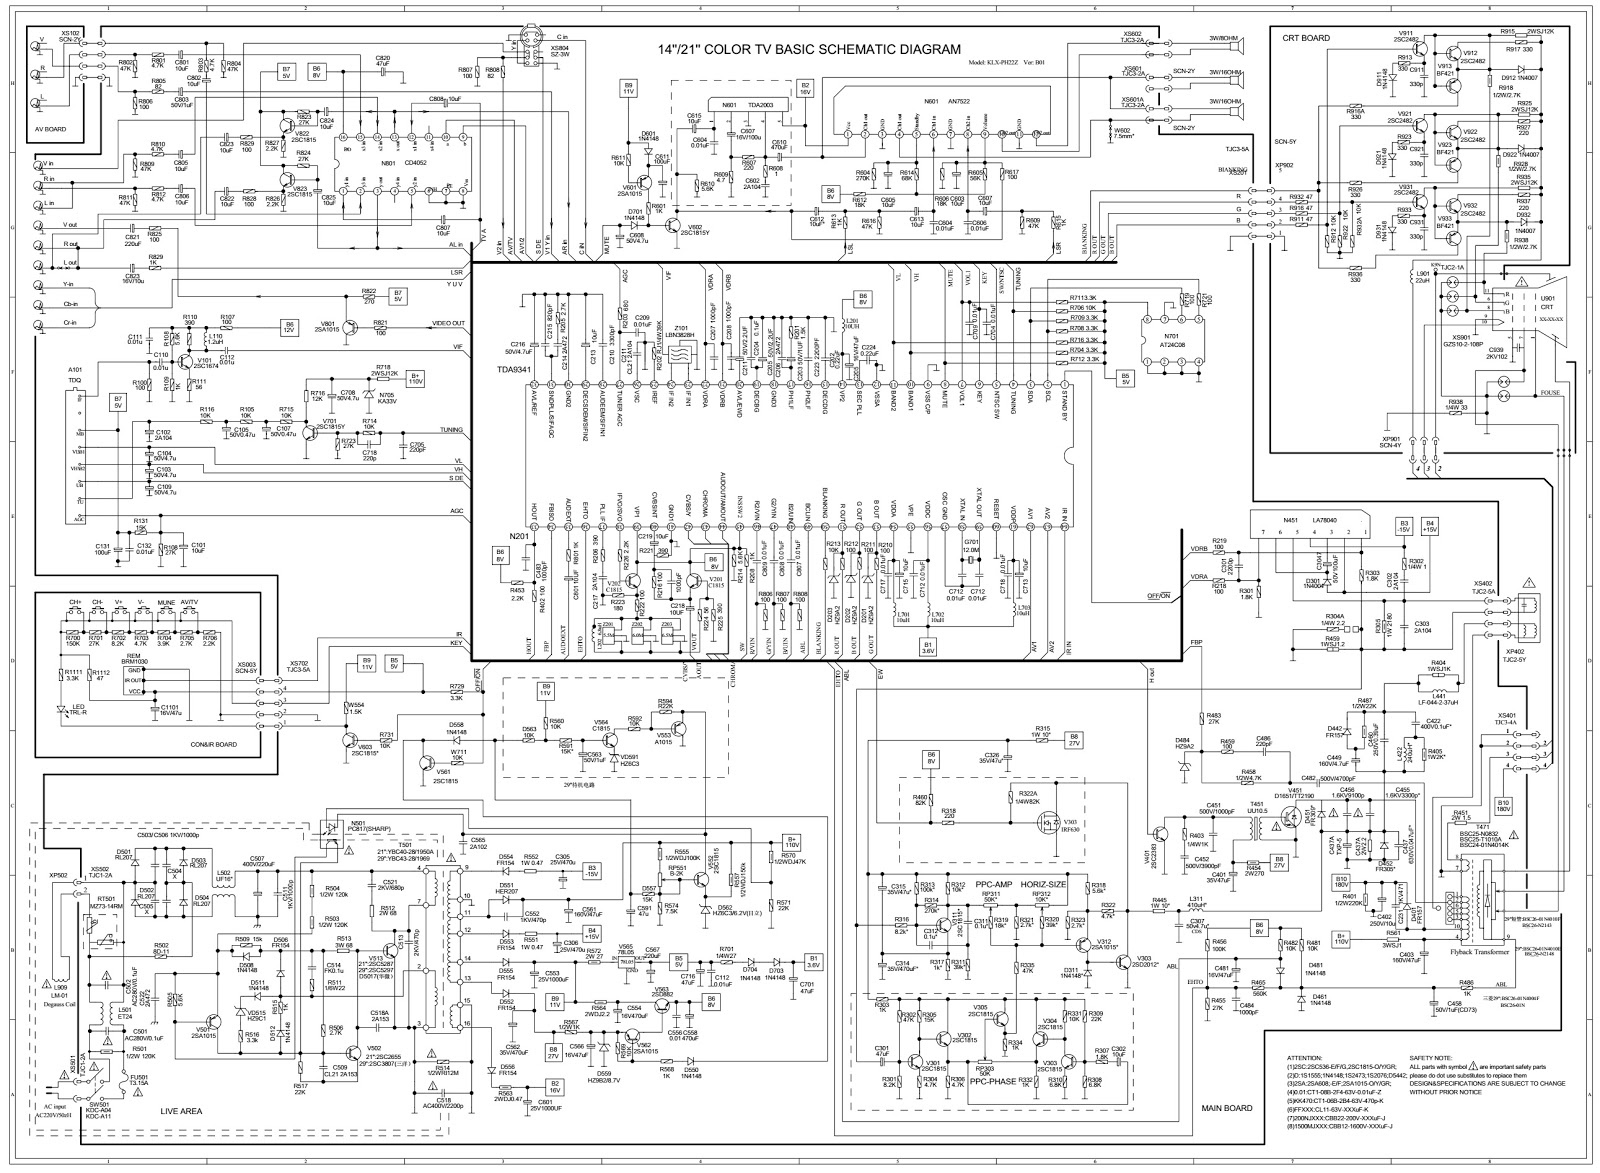 Schematic Diagrams  Color Tv Circuit Diagram Using Tda9341